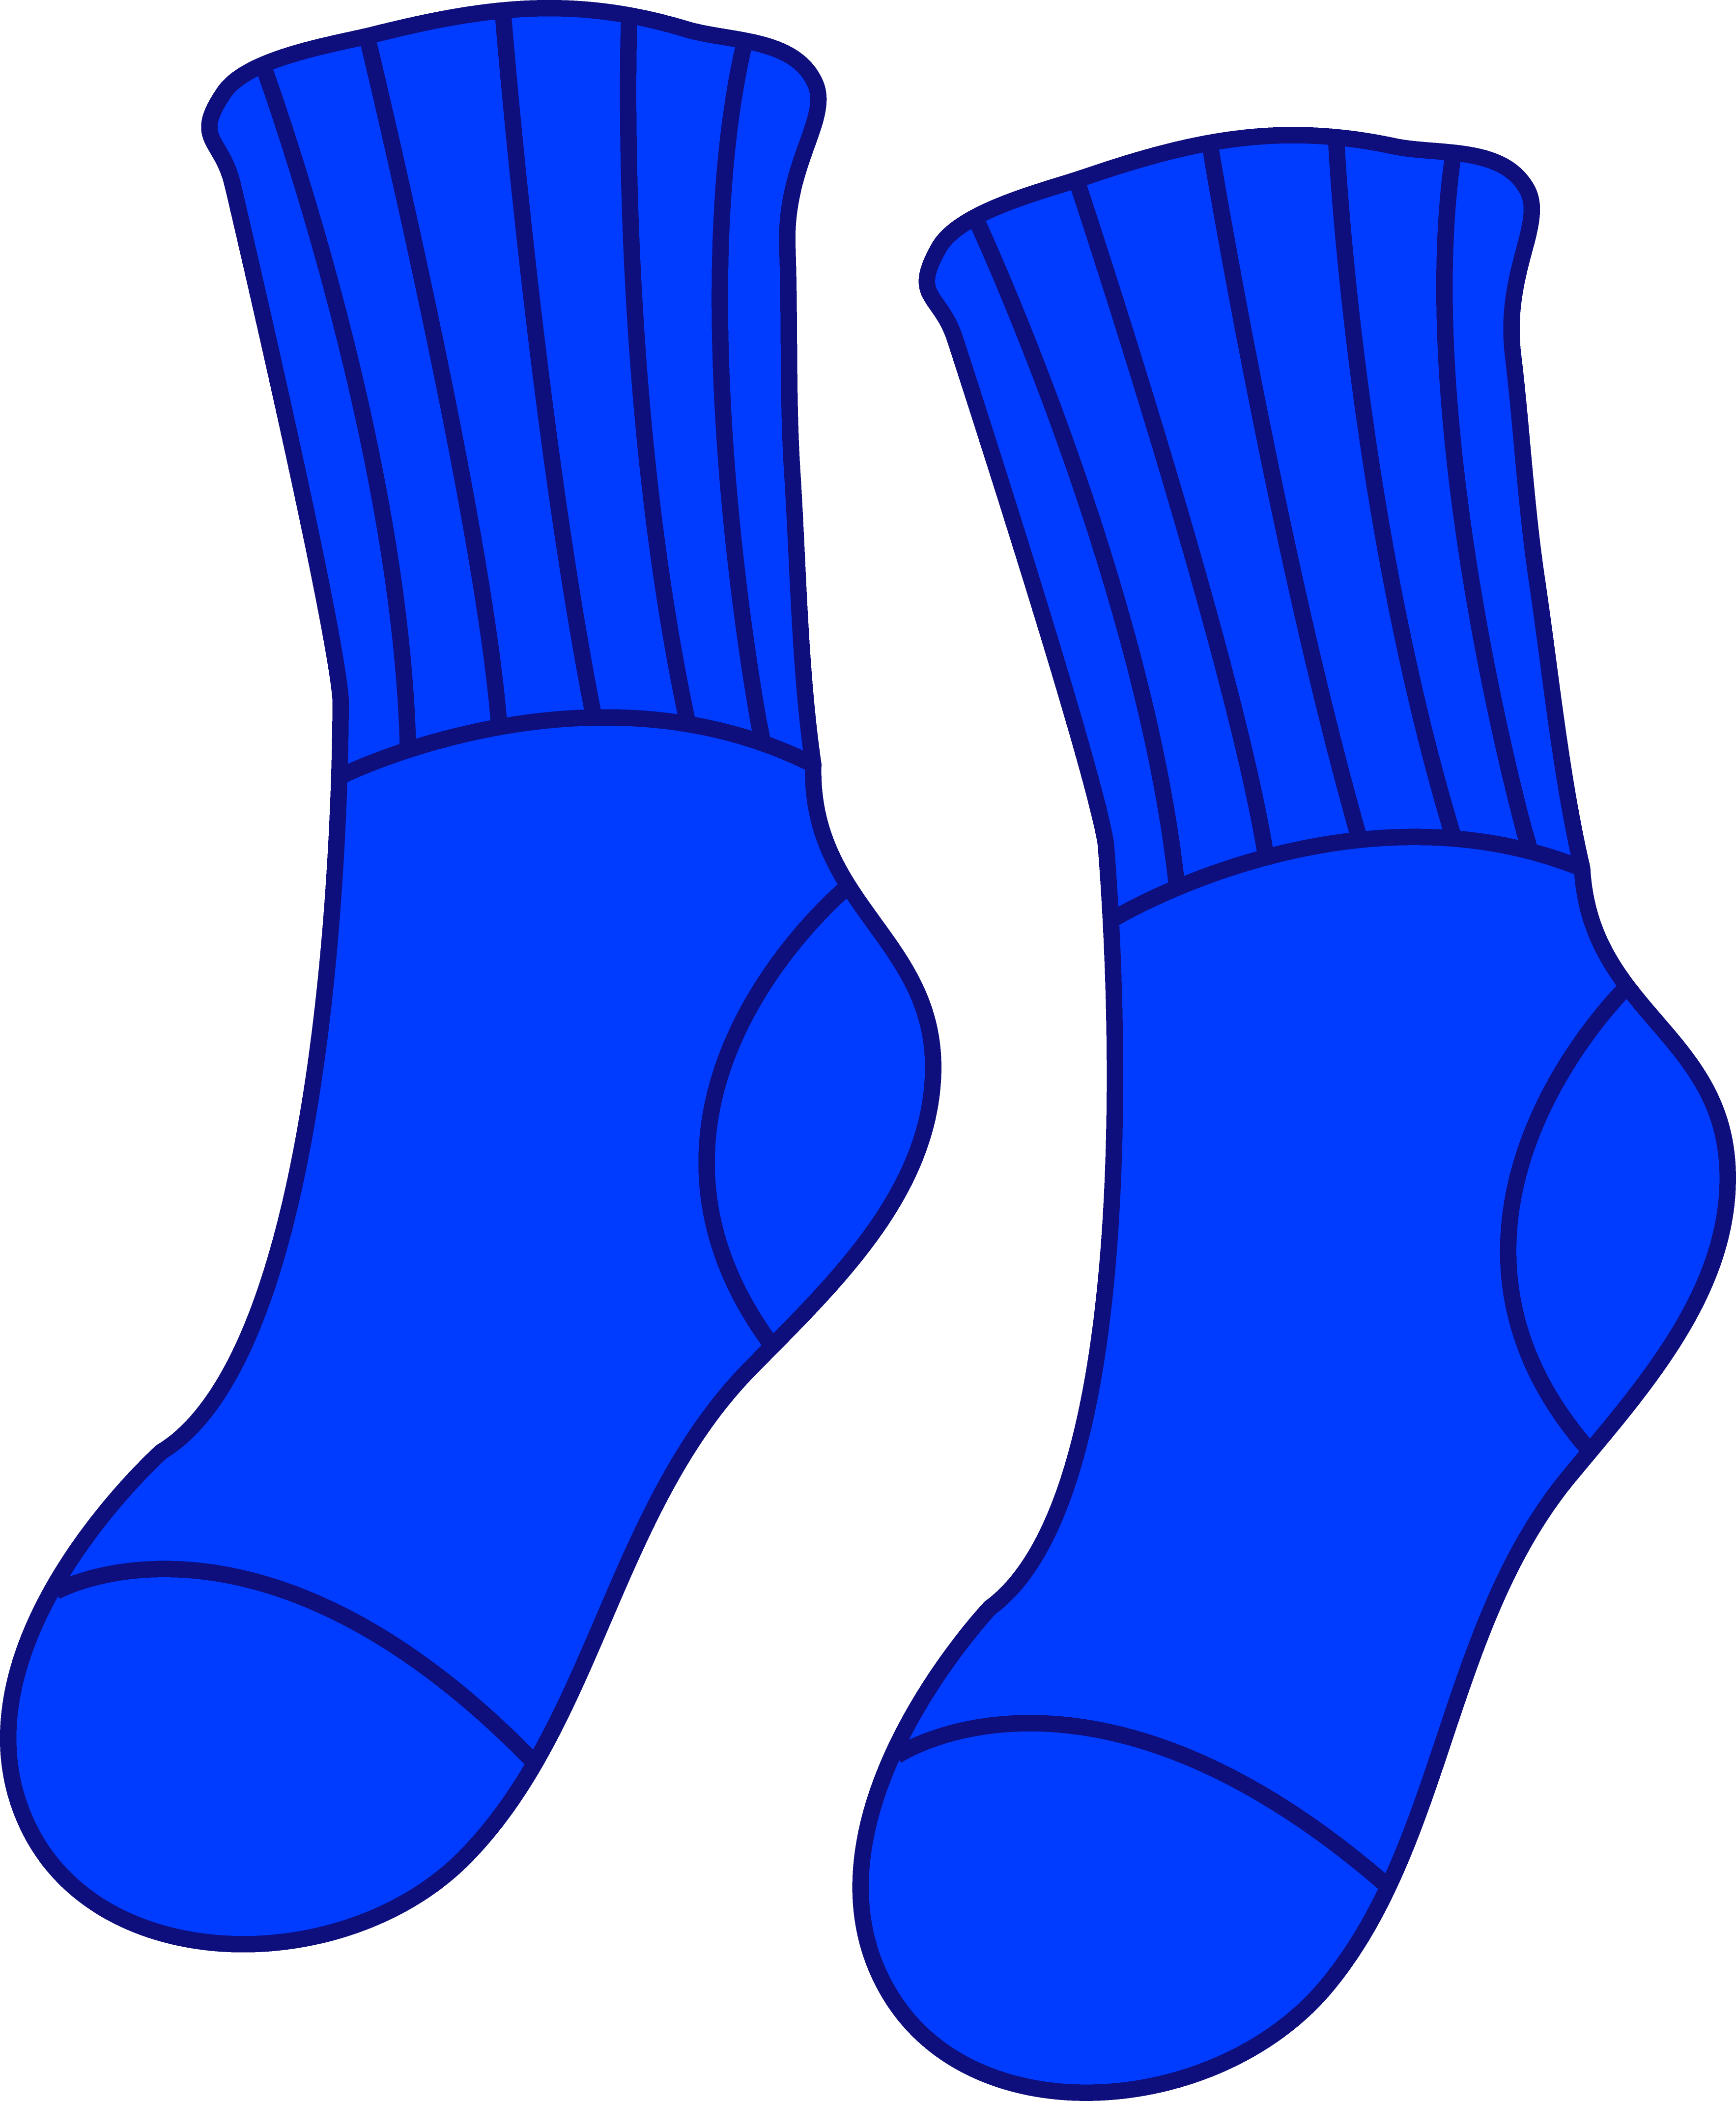 Clip art of socks